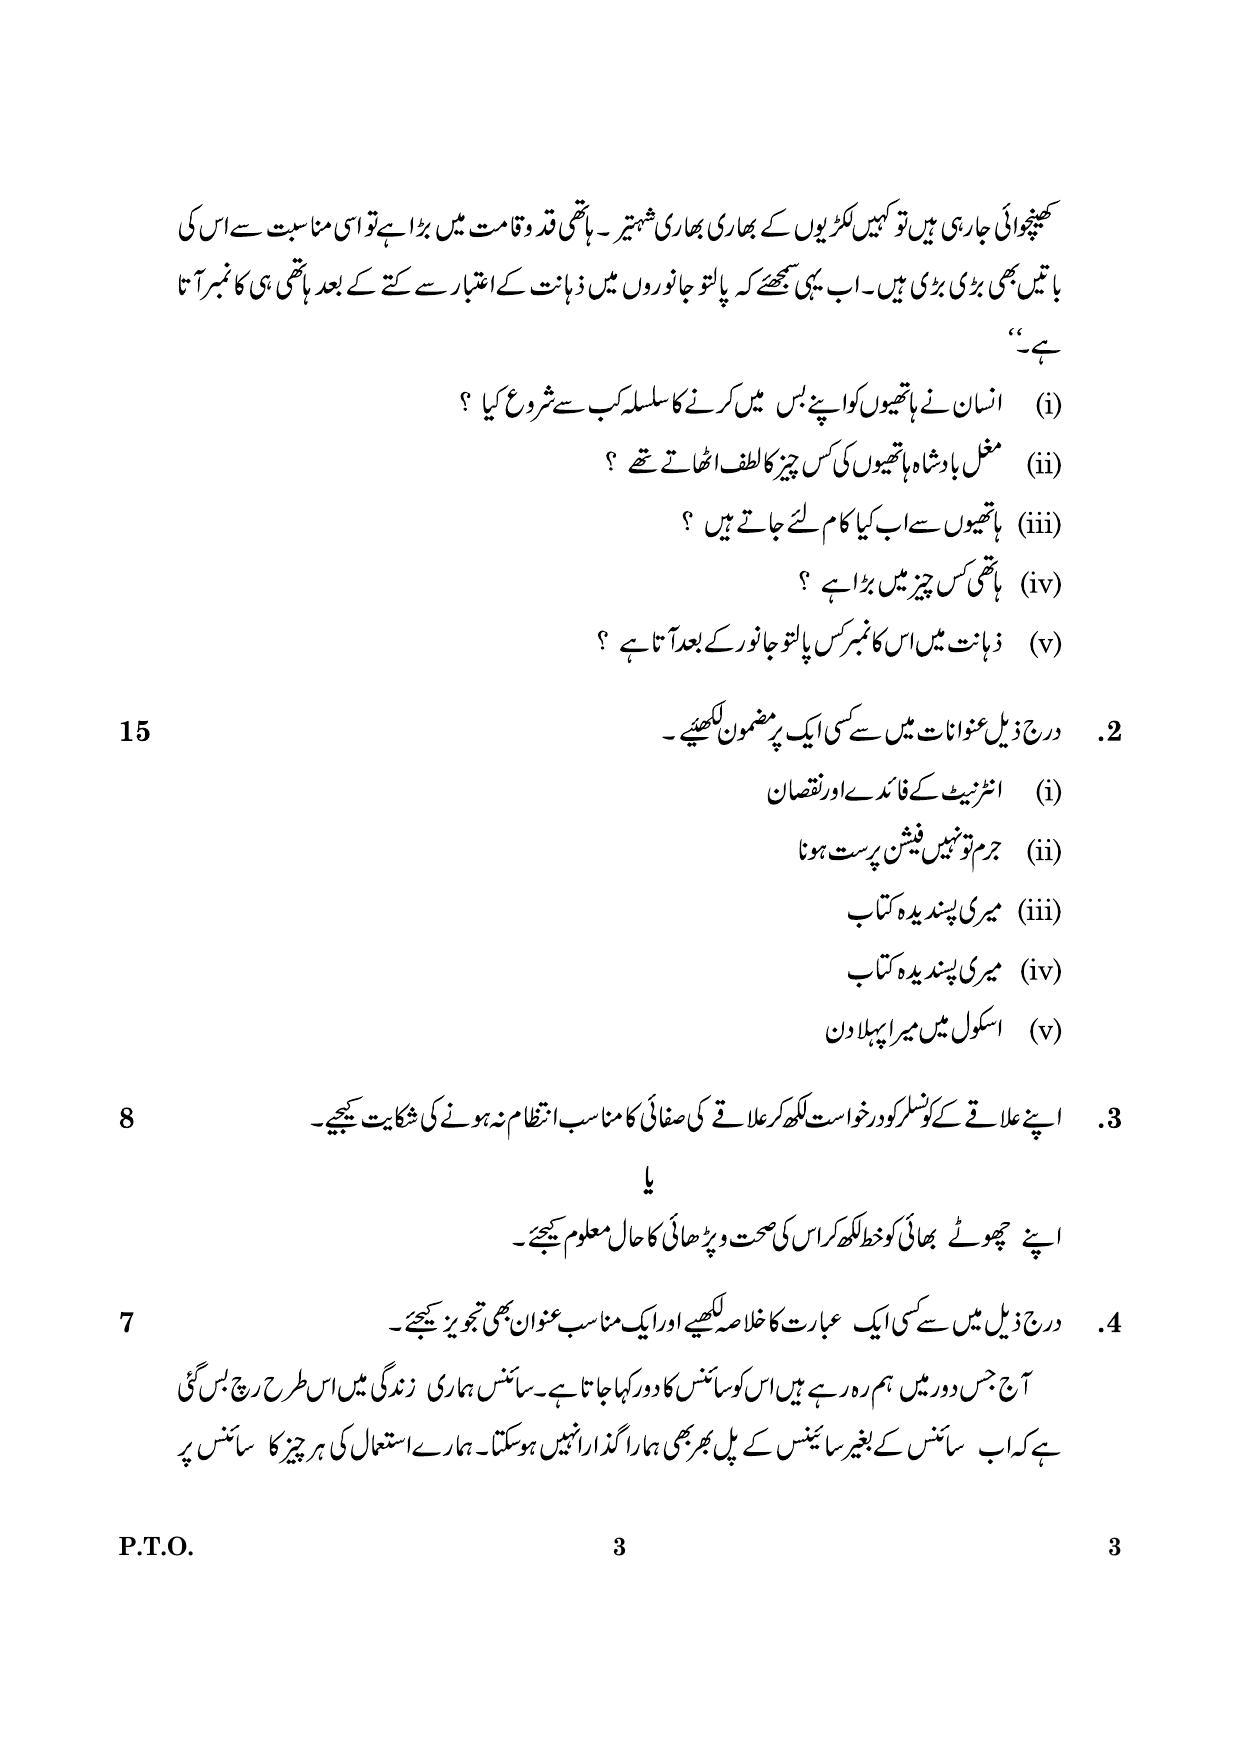 CBSE Class 12 003 Urdu Core 2016 Question Paper - Page 3